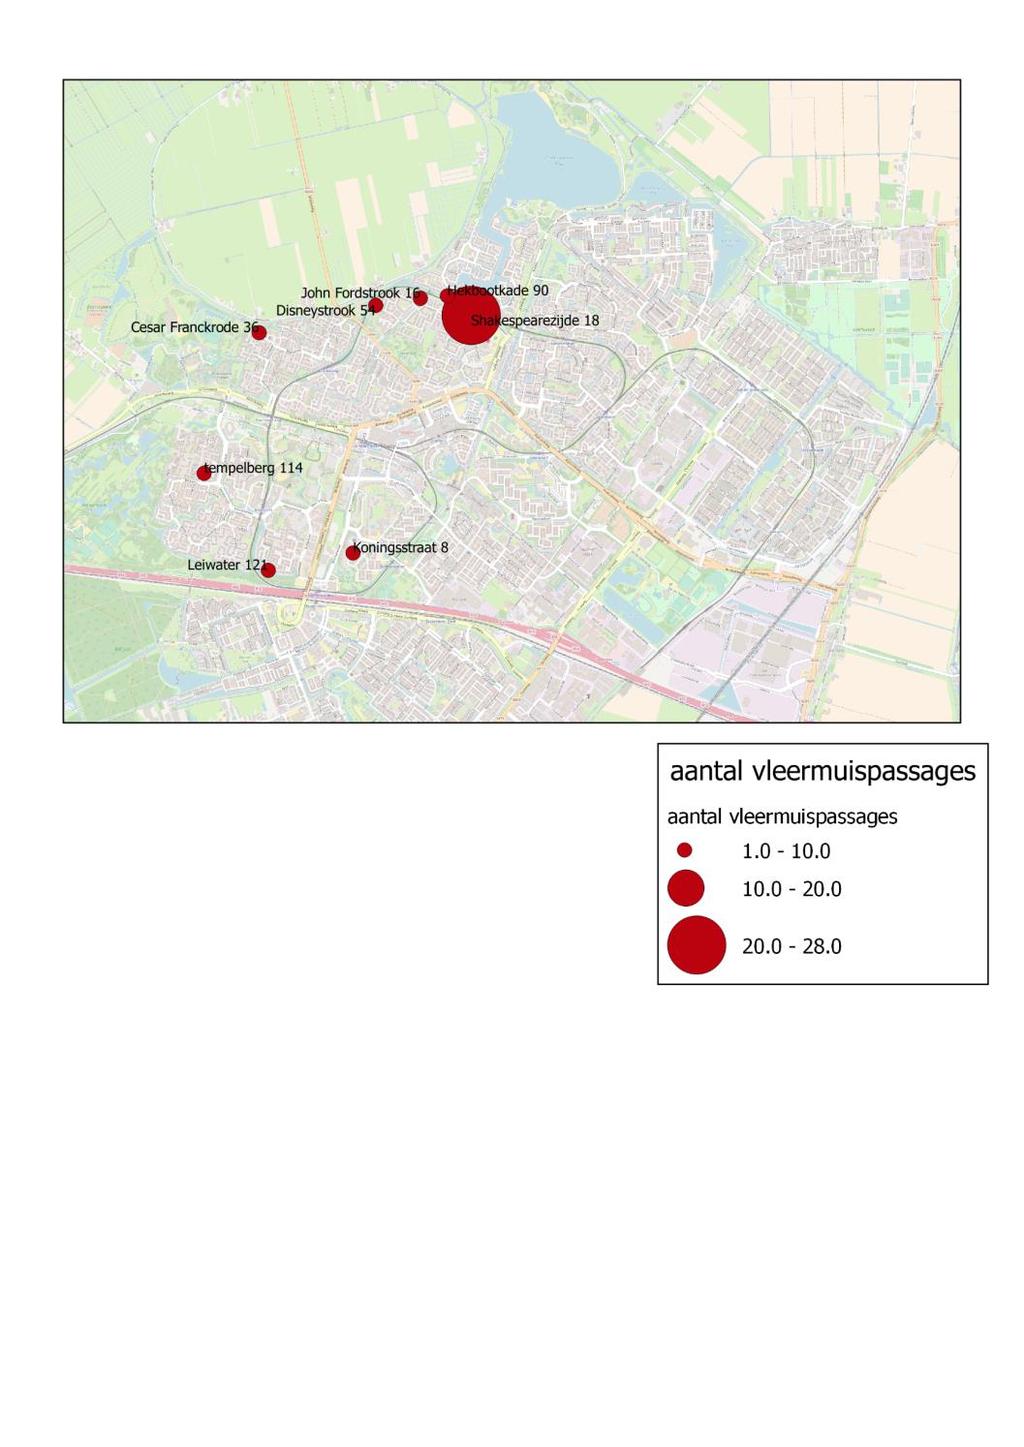 Water/meer vleermuis Water vleermuizen komen in Zoetermeer niet zoveel voor. De aantallen rond de shakespearzijde zijn een indicatie voor een kolonie in de buurt.